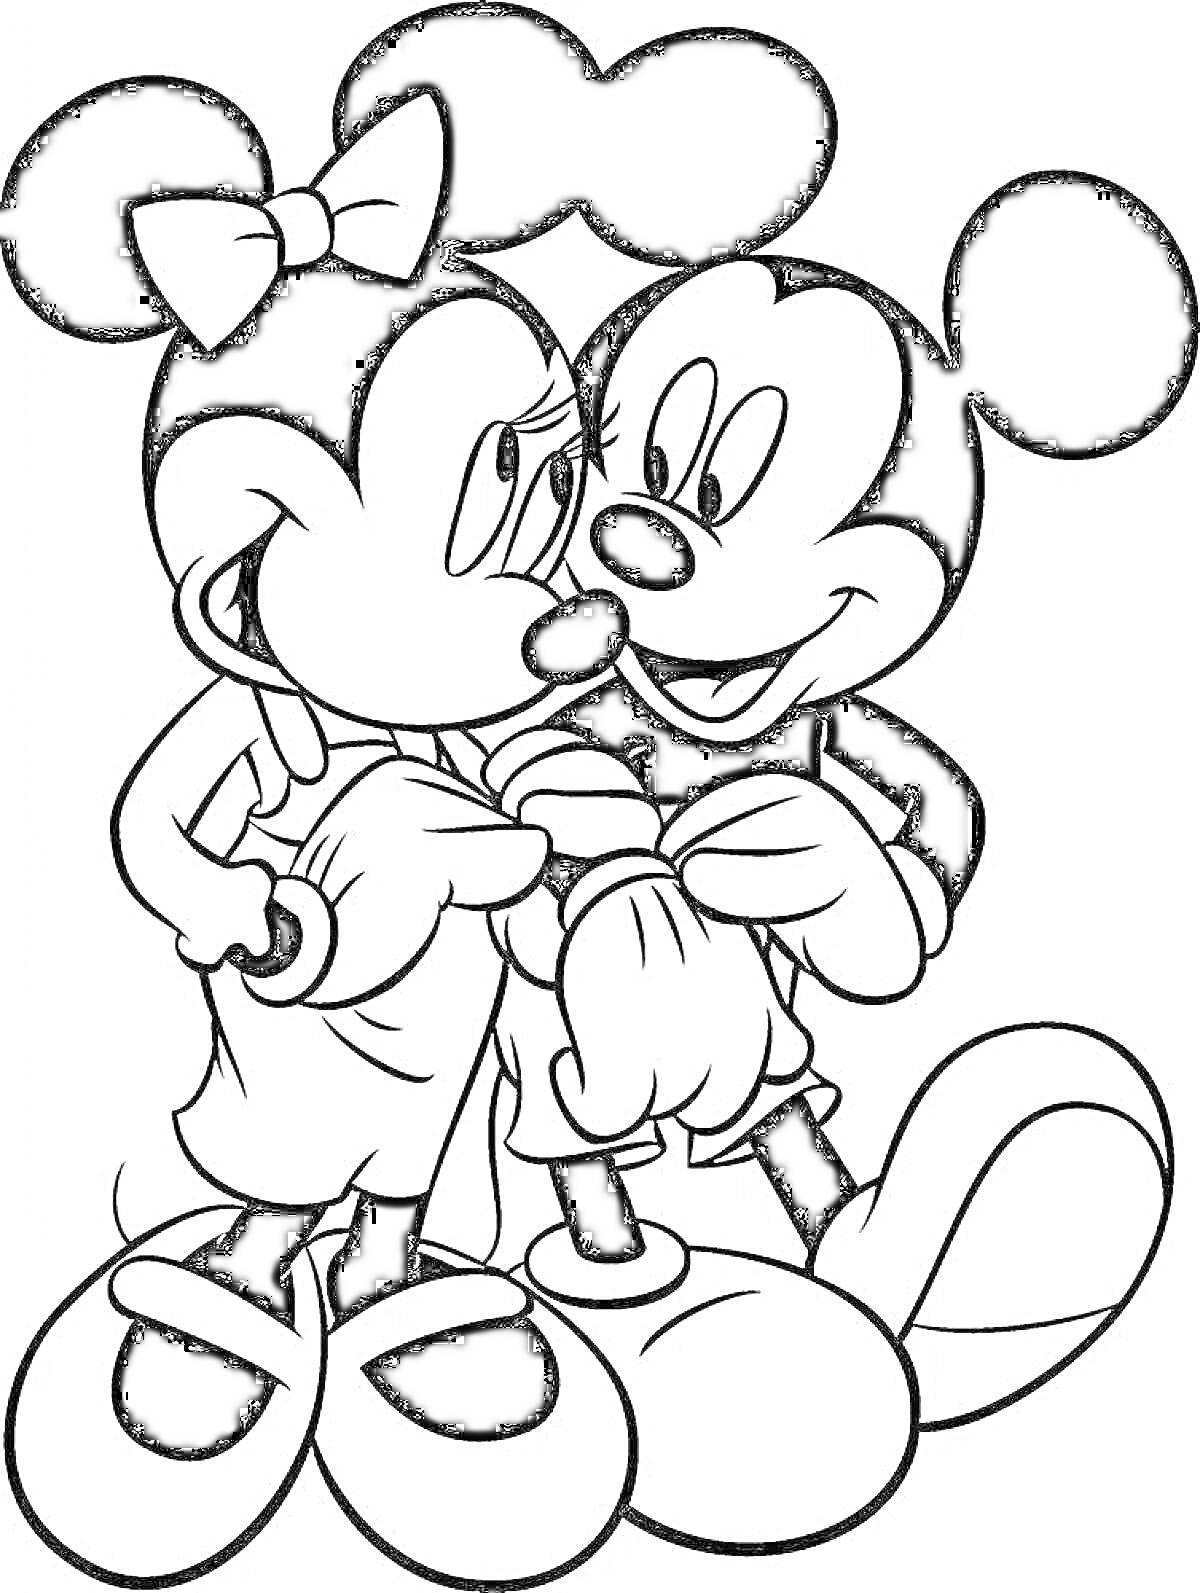 Раскраска Микки Маус и Минни Маус держатся за руки и обмениваются нежными взглядами